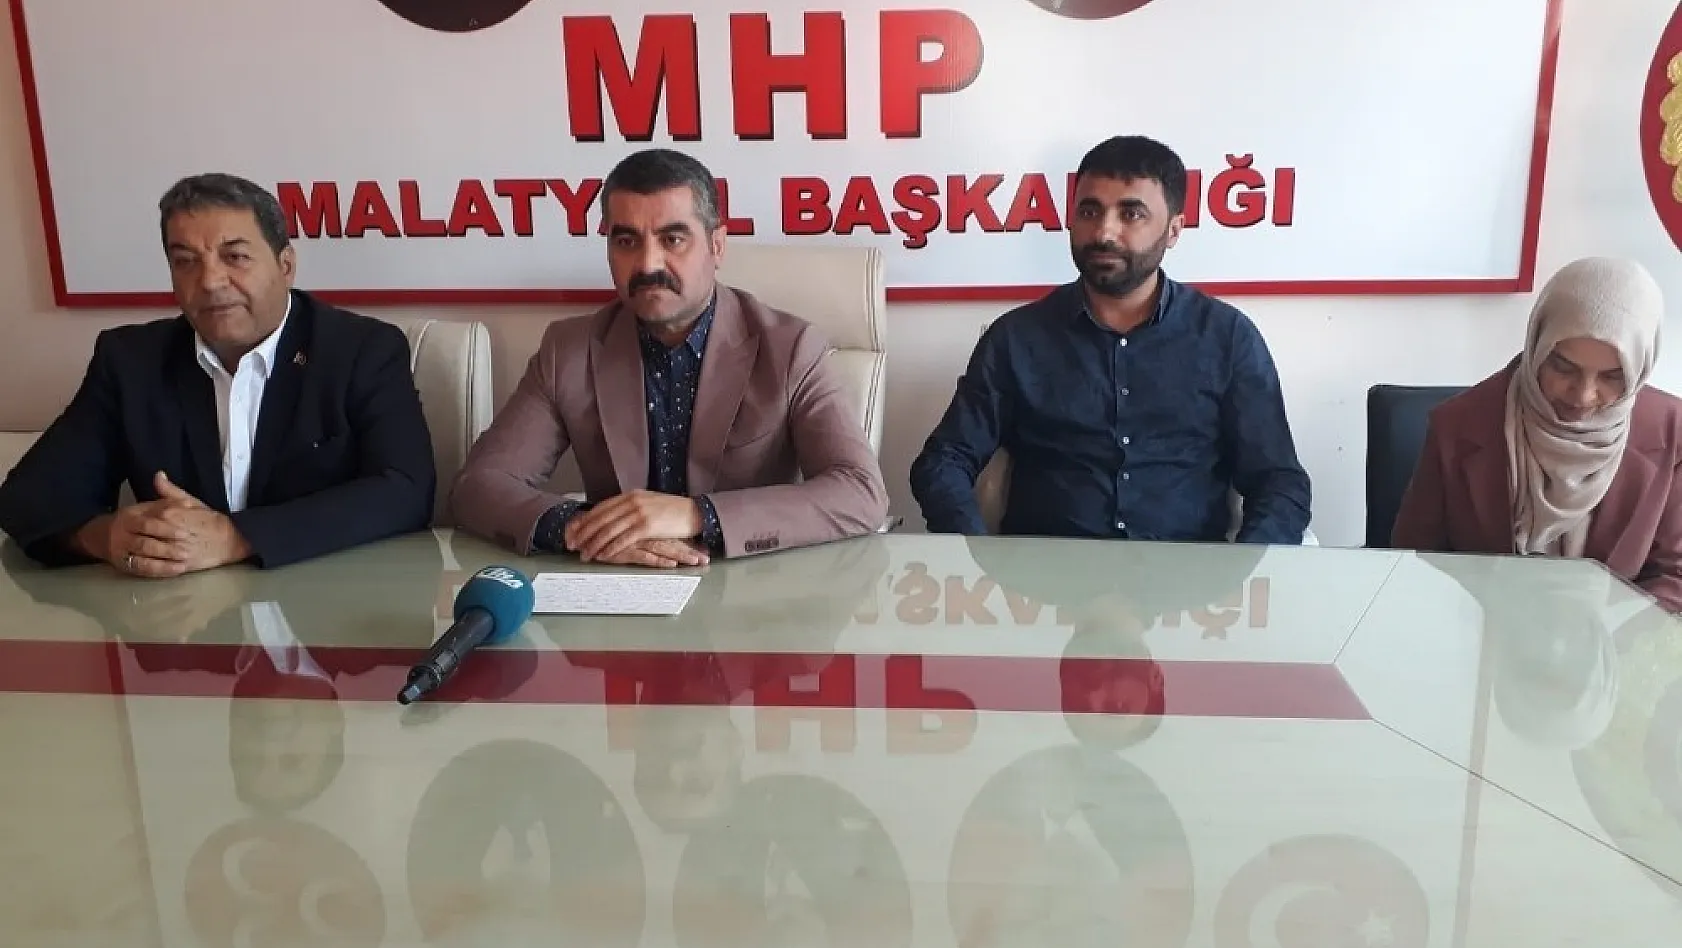 MHP Malatya'da bayramlaşma töreni 